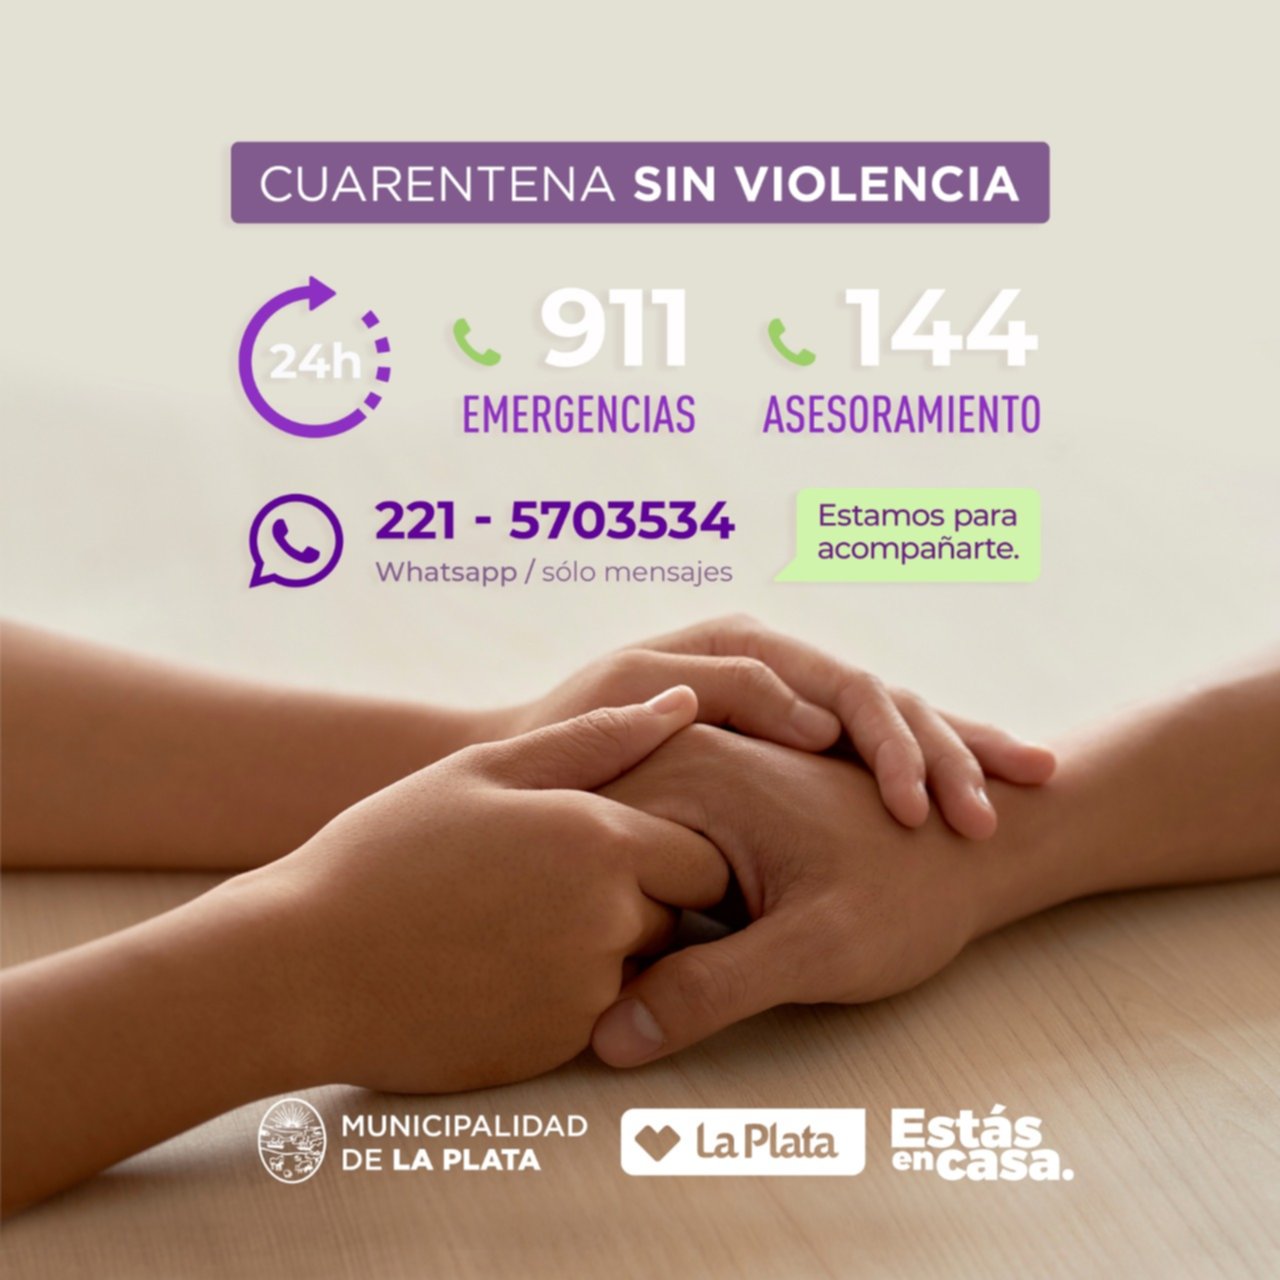 El Municipio Habilitó Una Nueva Línea Para Asistir A Víctimas De Violencias De Género 0935